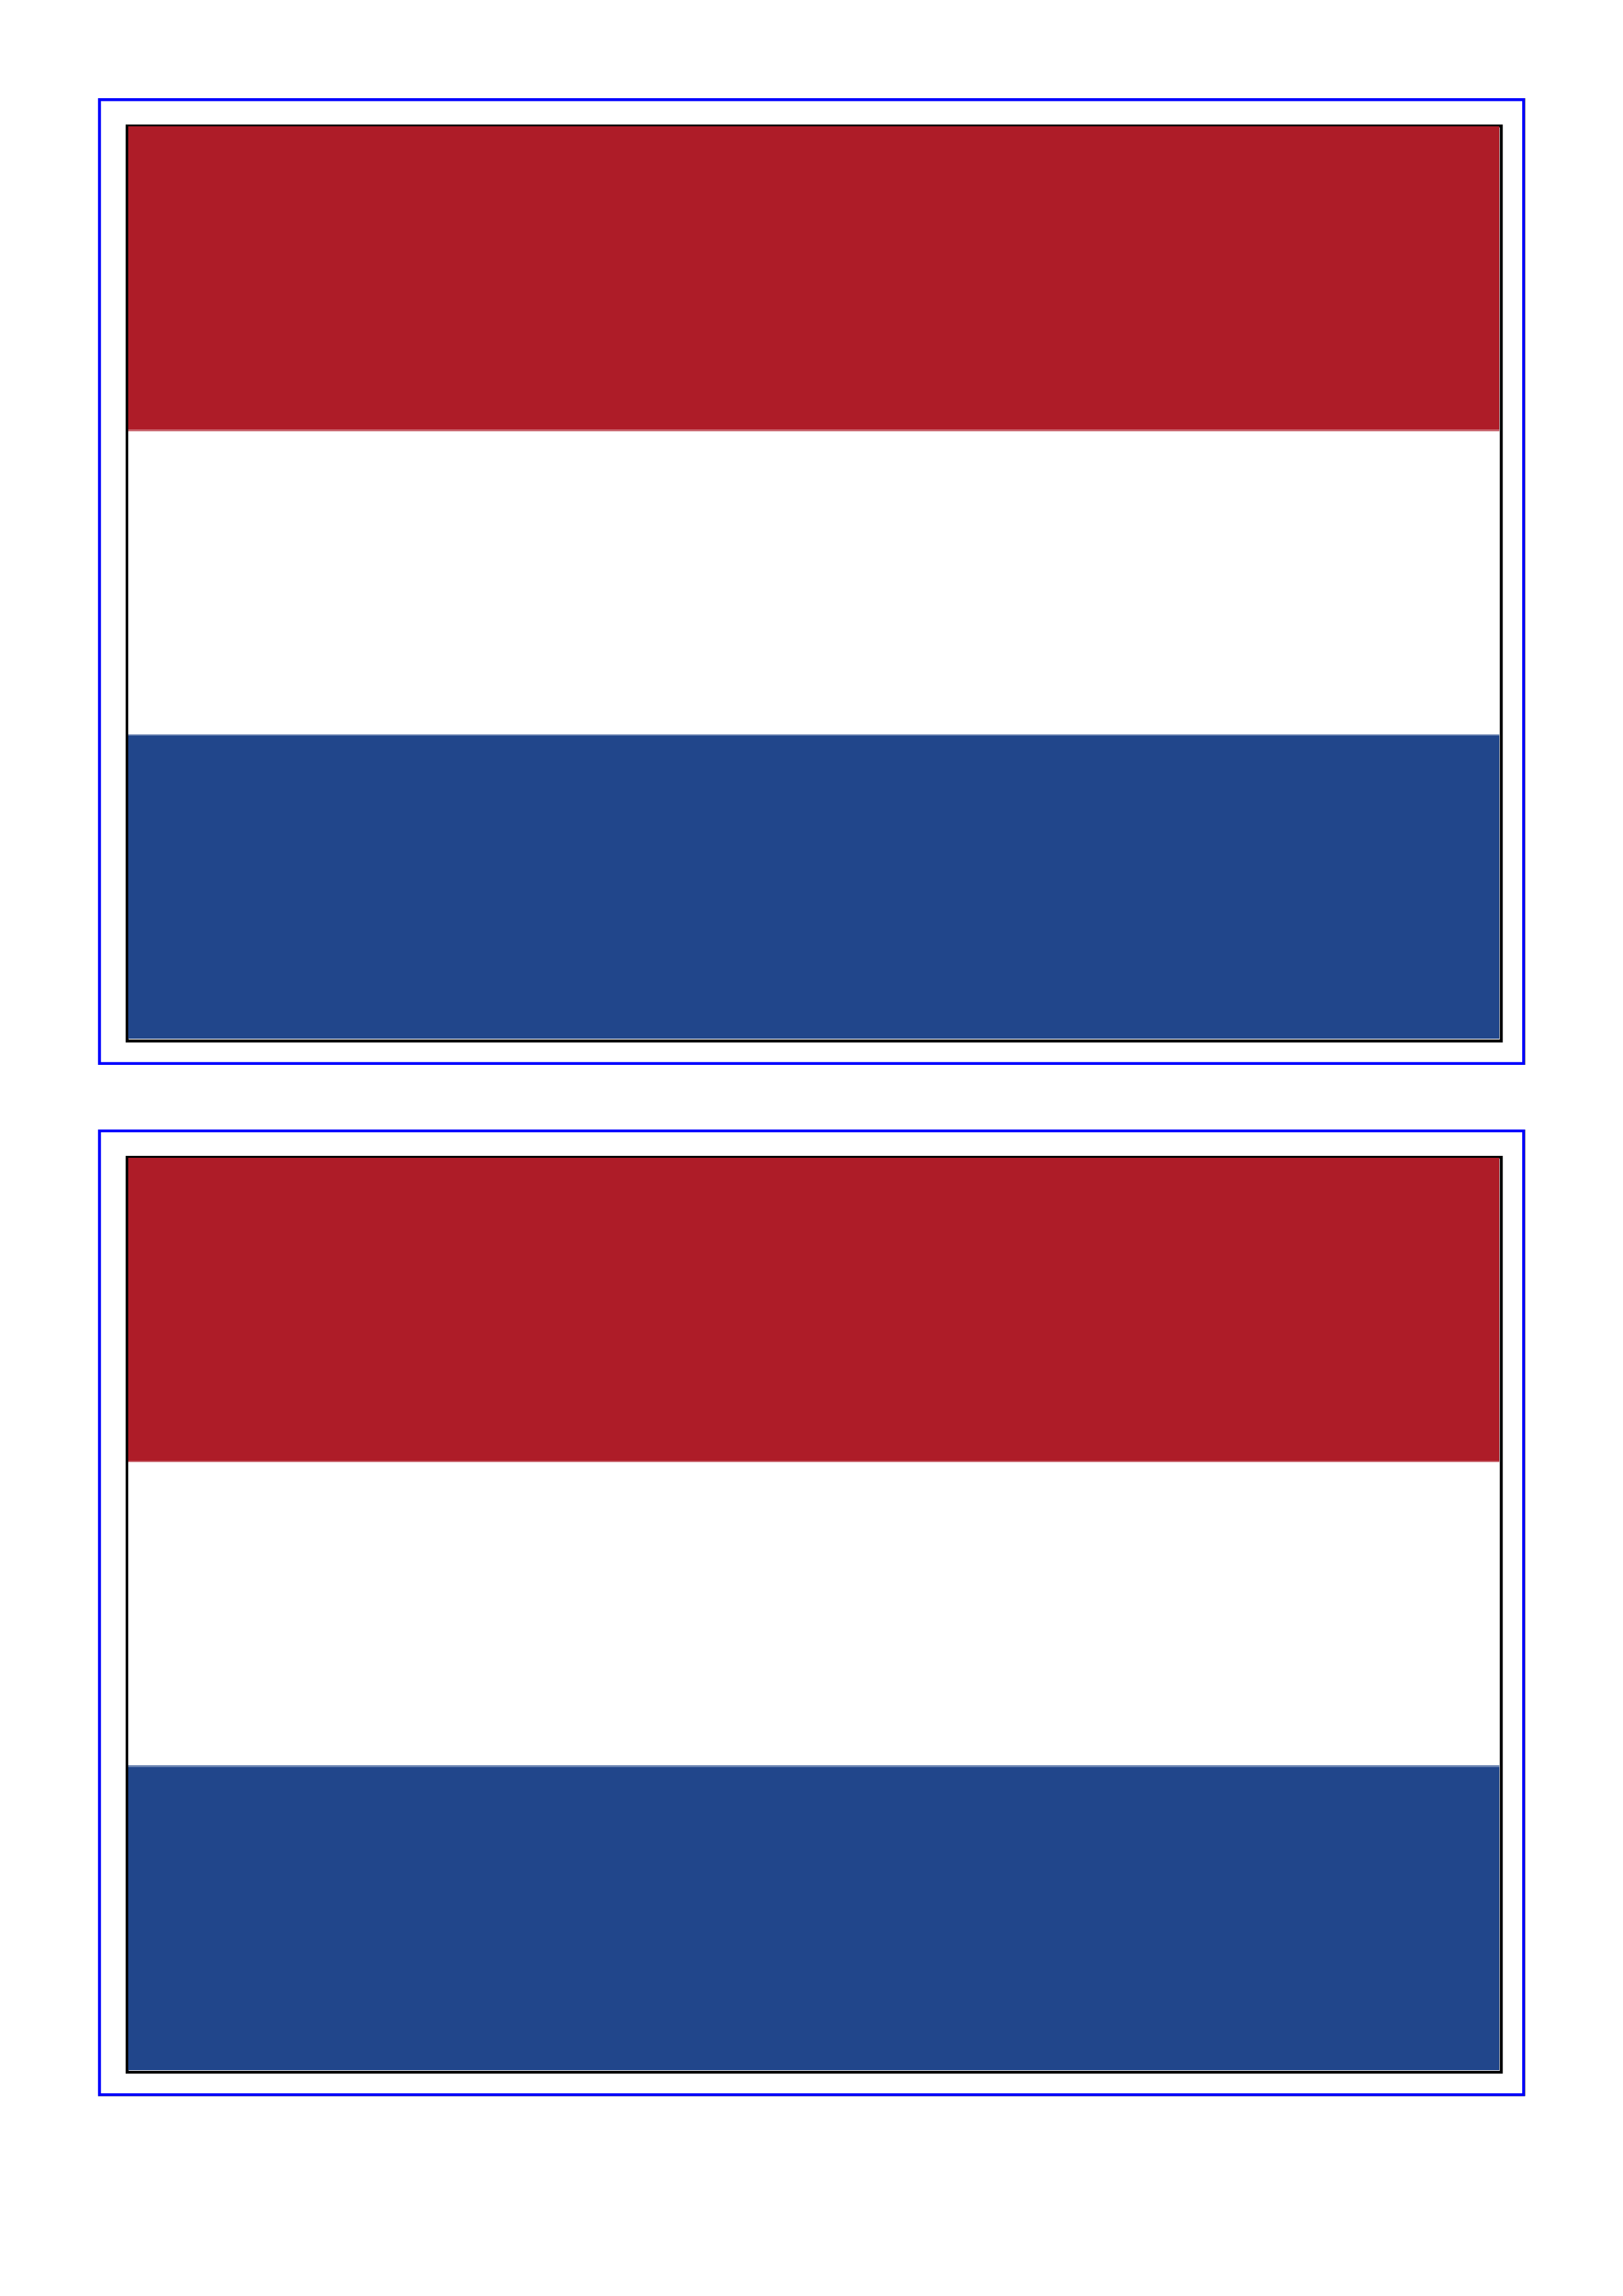 bild der niederländischen flagge Hauptschablonenbild